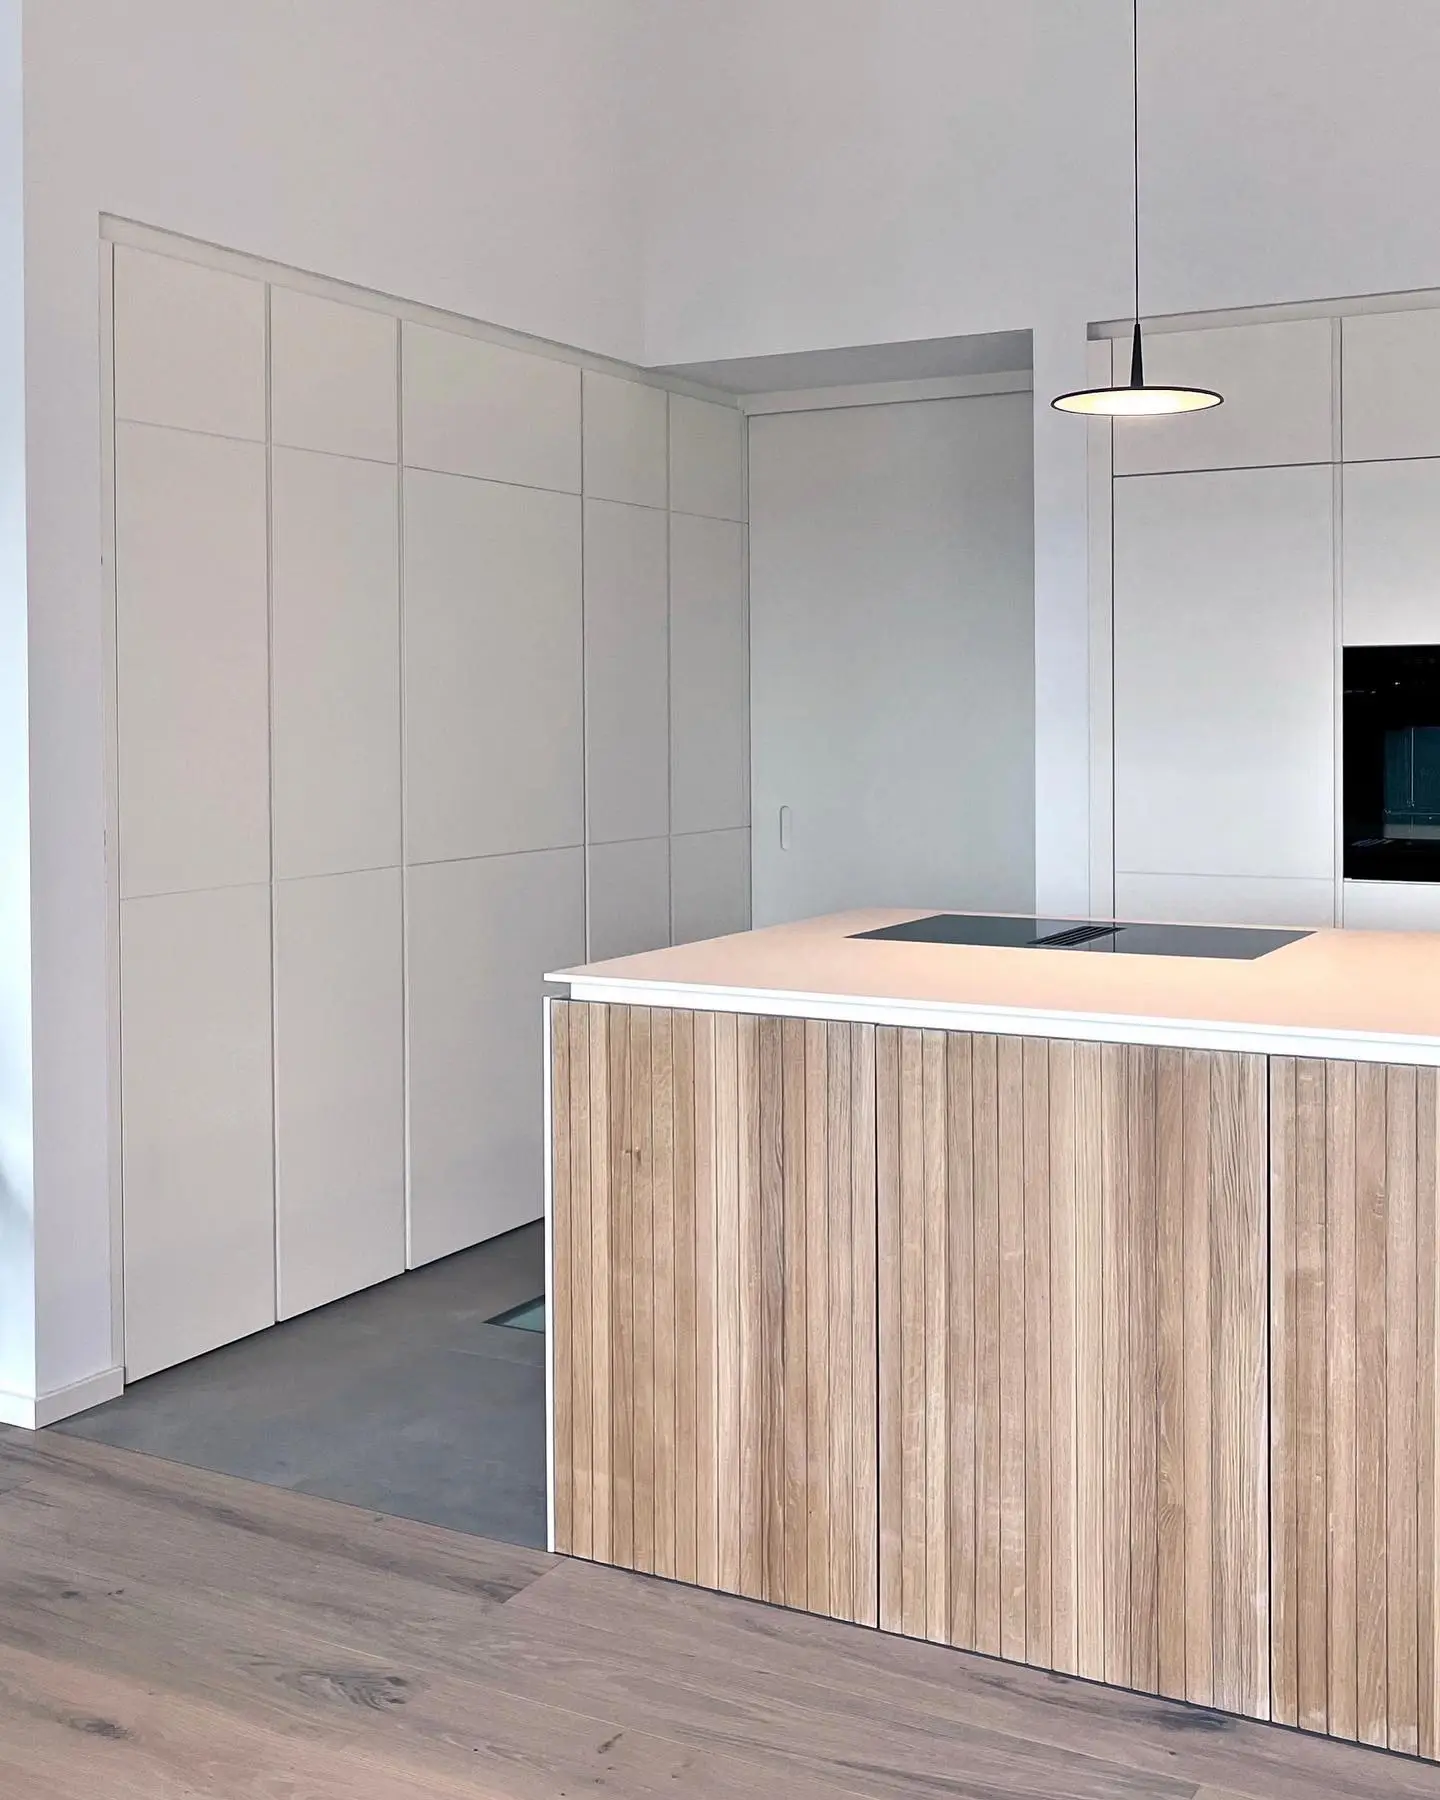 Moderne Küche mit Einbauschrank und einer versteckten Tür, die zum Hauswirtschaftsraum führt.